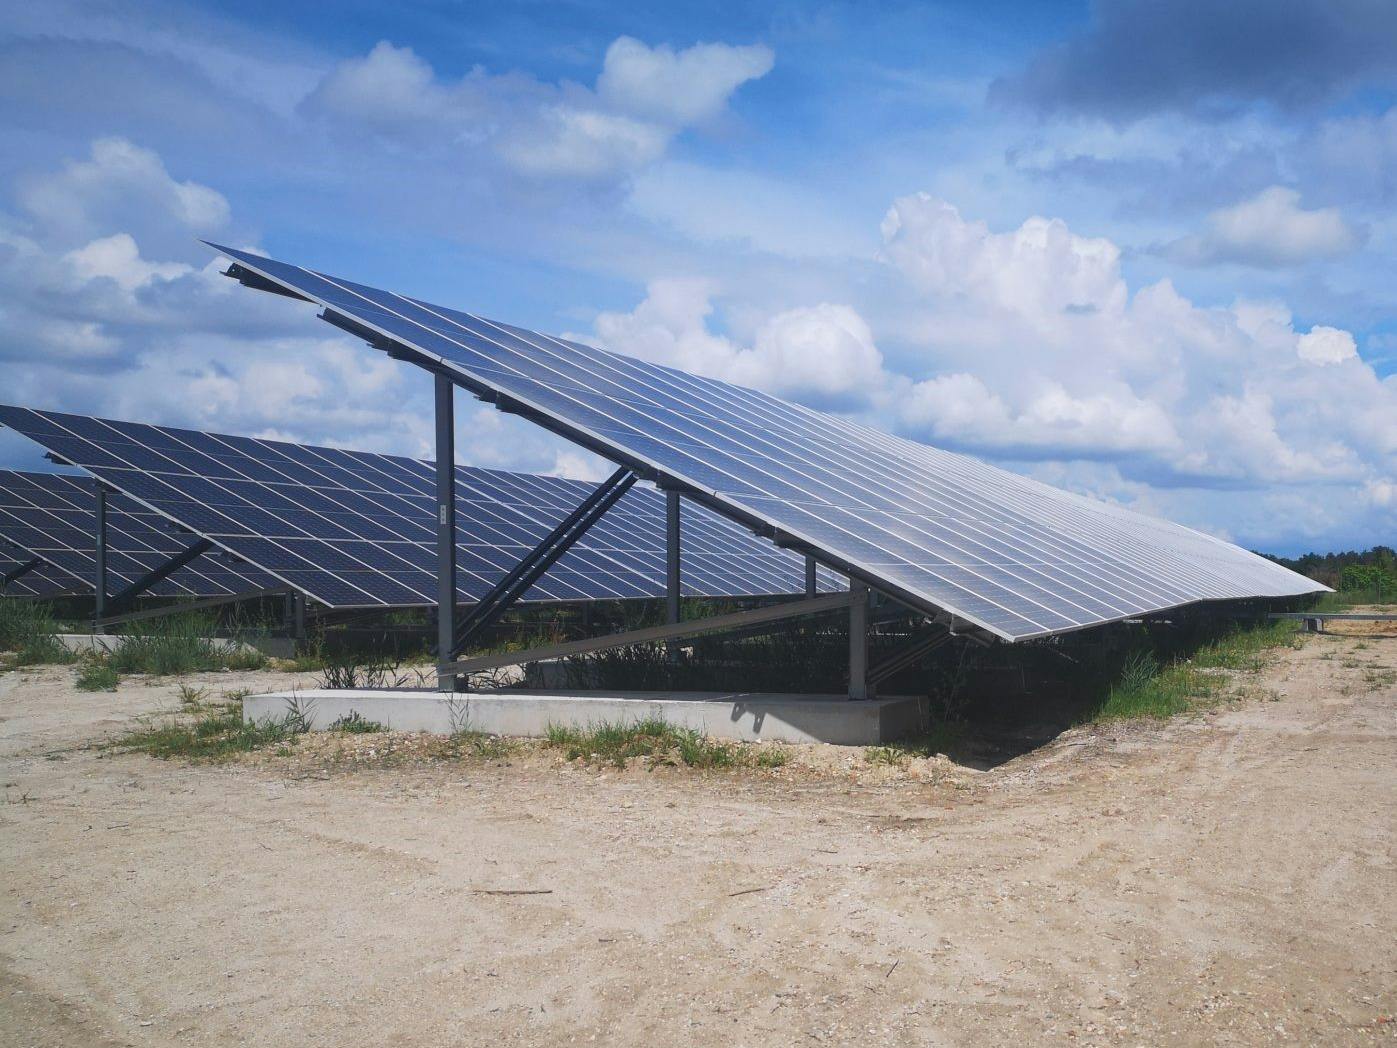 Campagne de financement participatif – Central solaire de Monfaucon